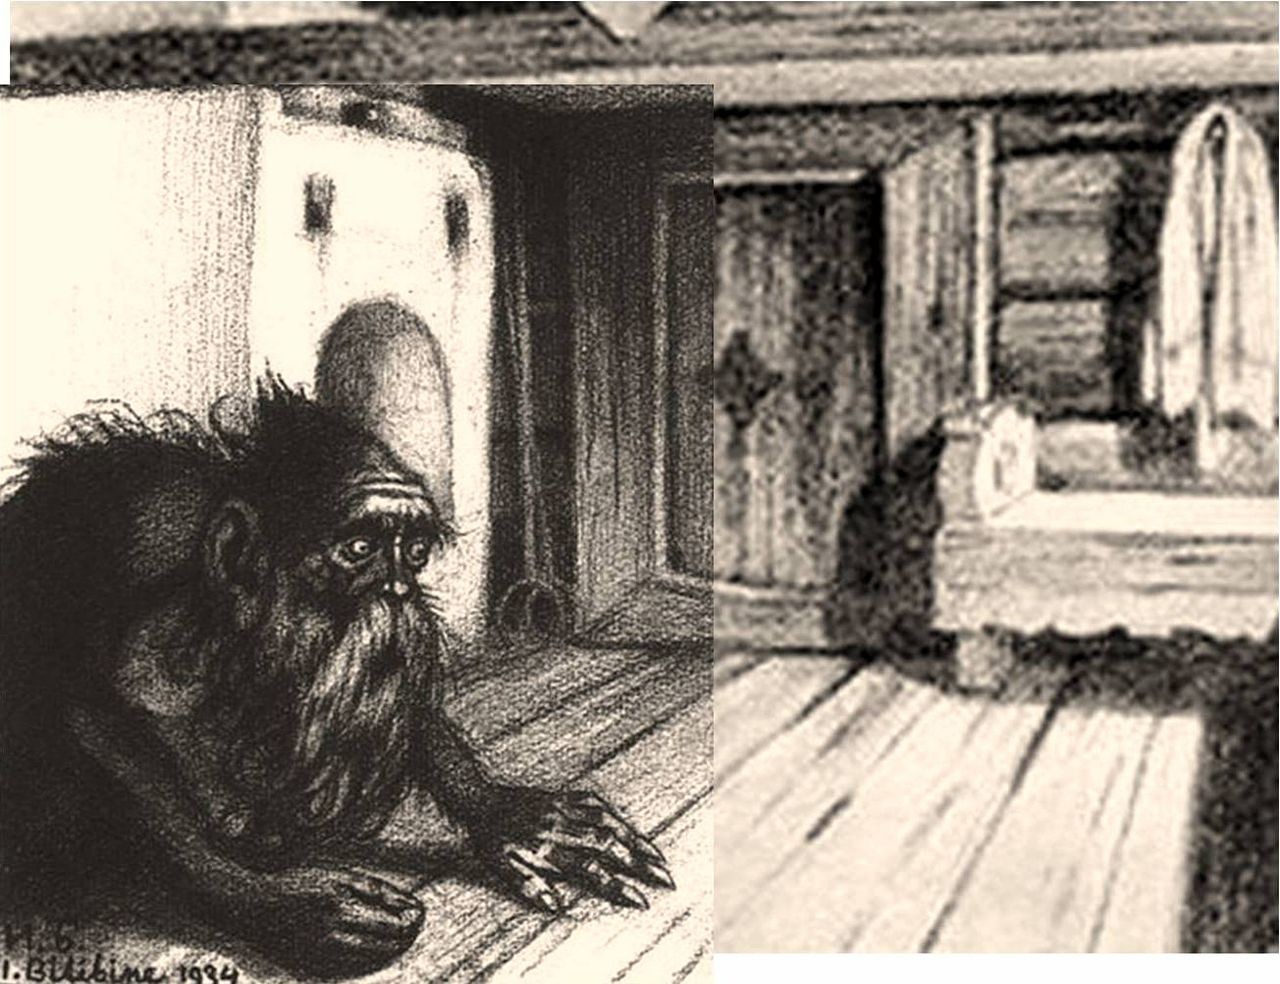 Domovoj je mali hišni duh iz slovanske mitologije. Navadno stanuje za pečjo. Tako ga je upodobil znameniti ilustrator Ivan Bilibin (1934).